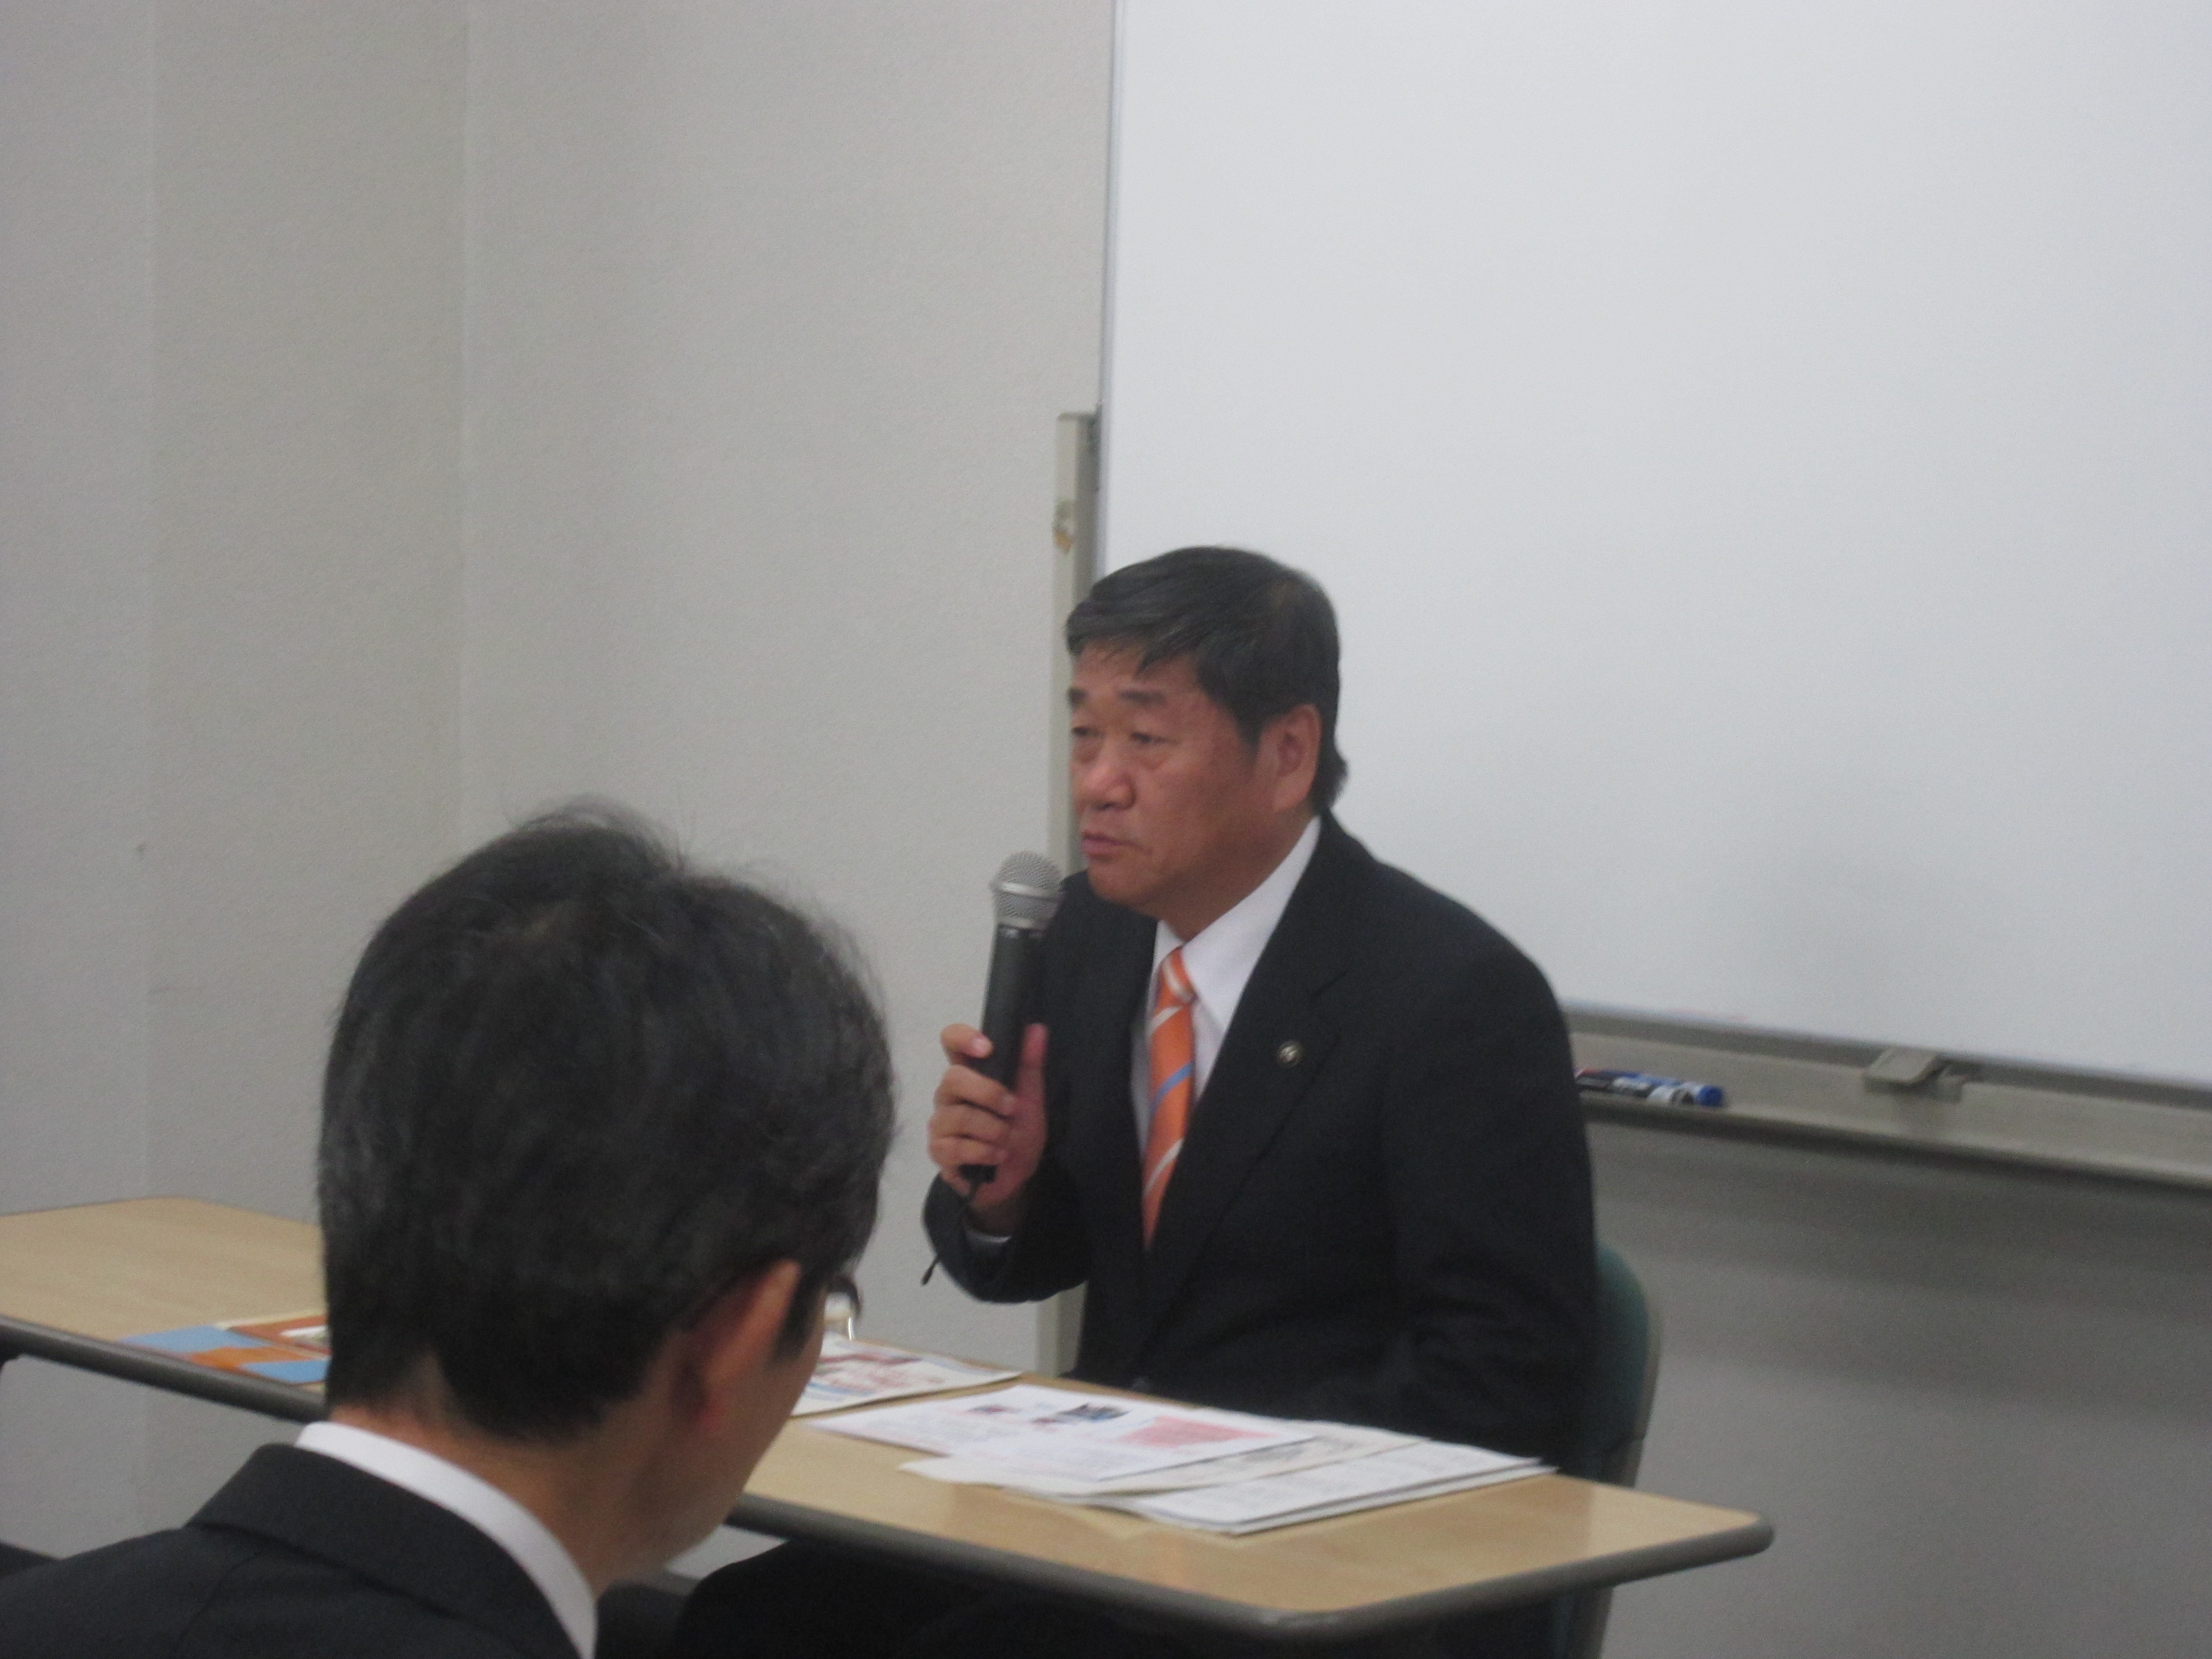 IMG 1912 - 2012年11月27日AOsuki第4回勉強会八戸市小林市長